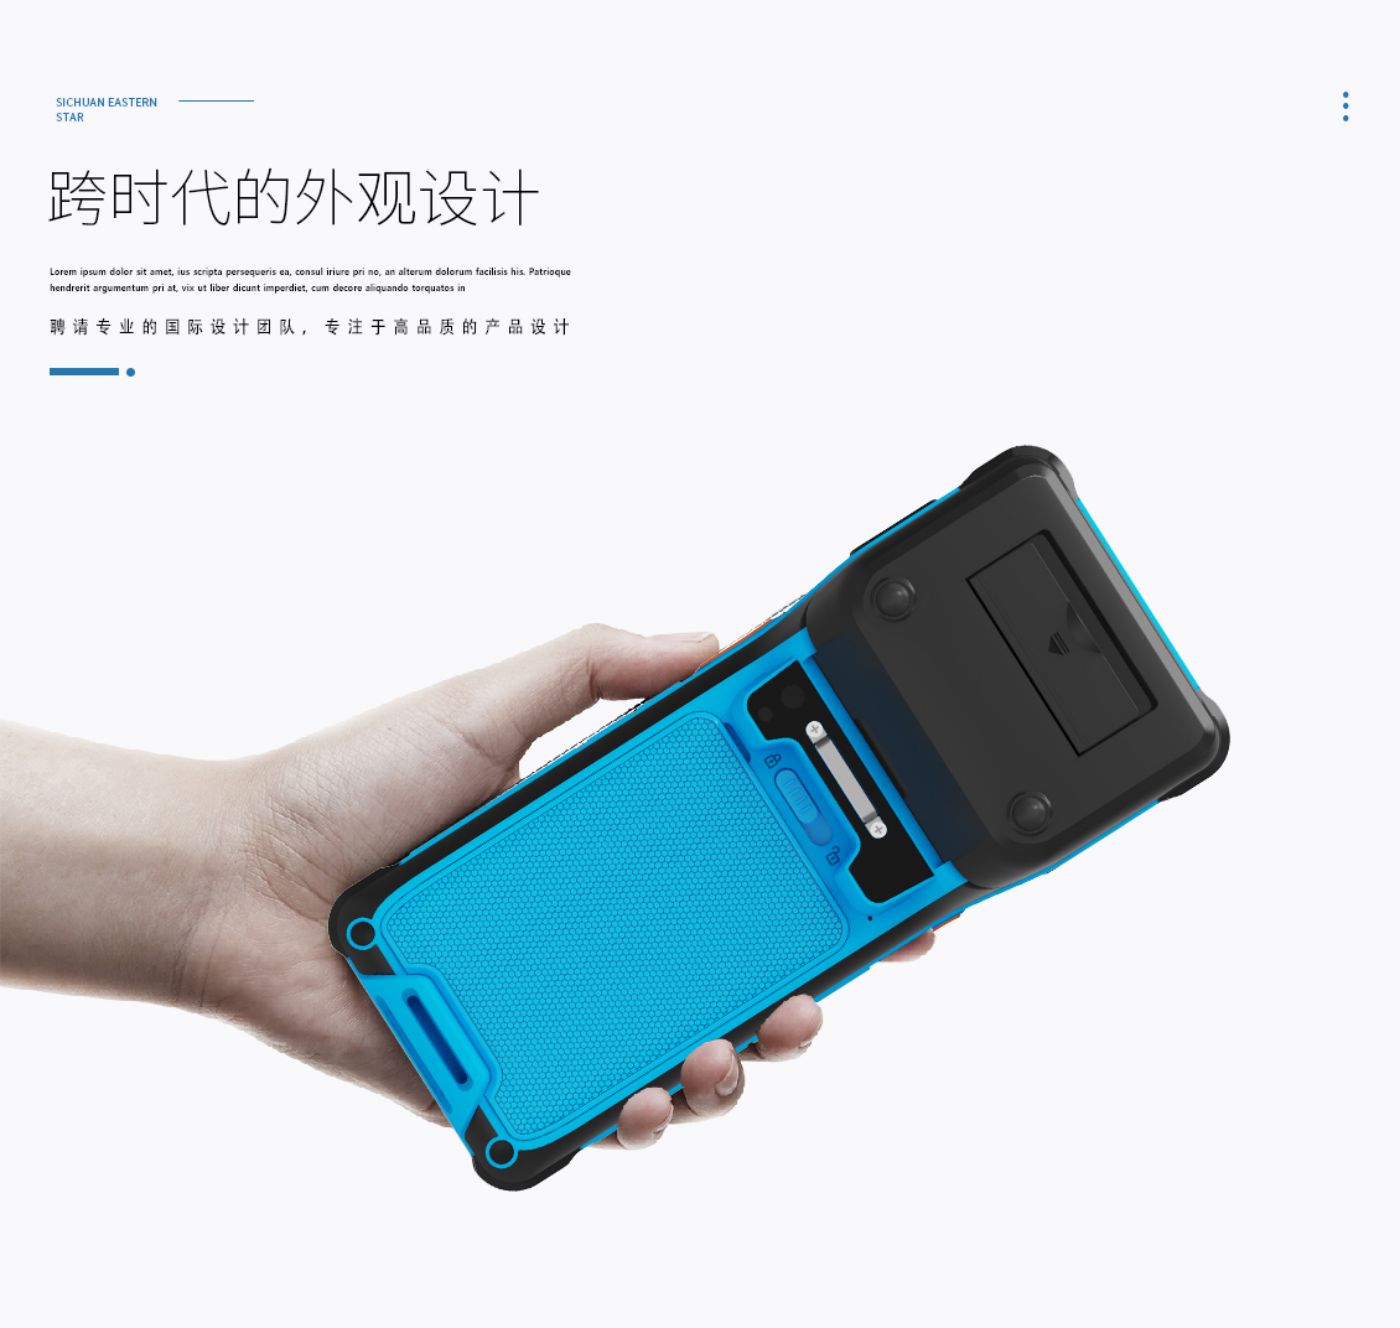 带打印手持终端PDA KC60 蓝黑新配色1 国际专业产品设计团队，跨时代的外观设计